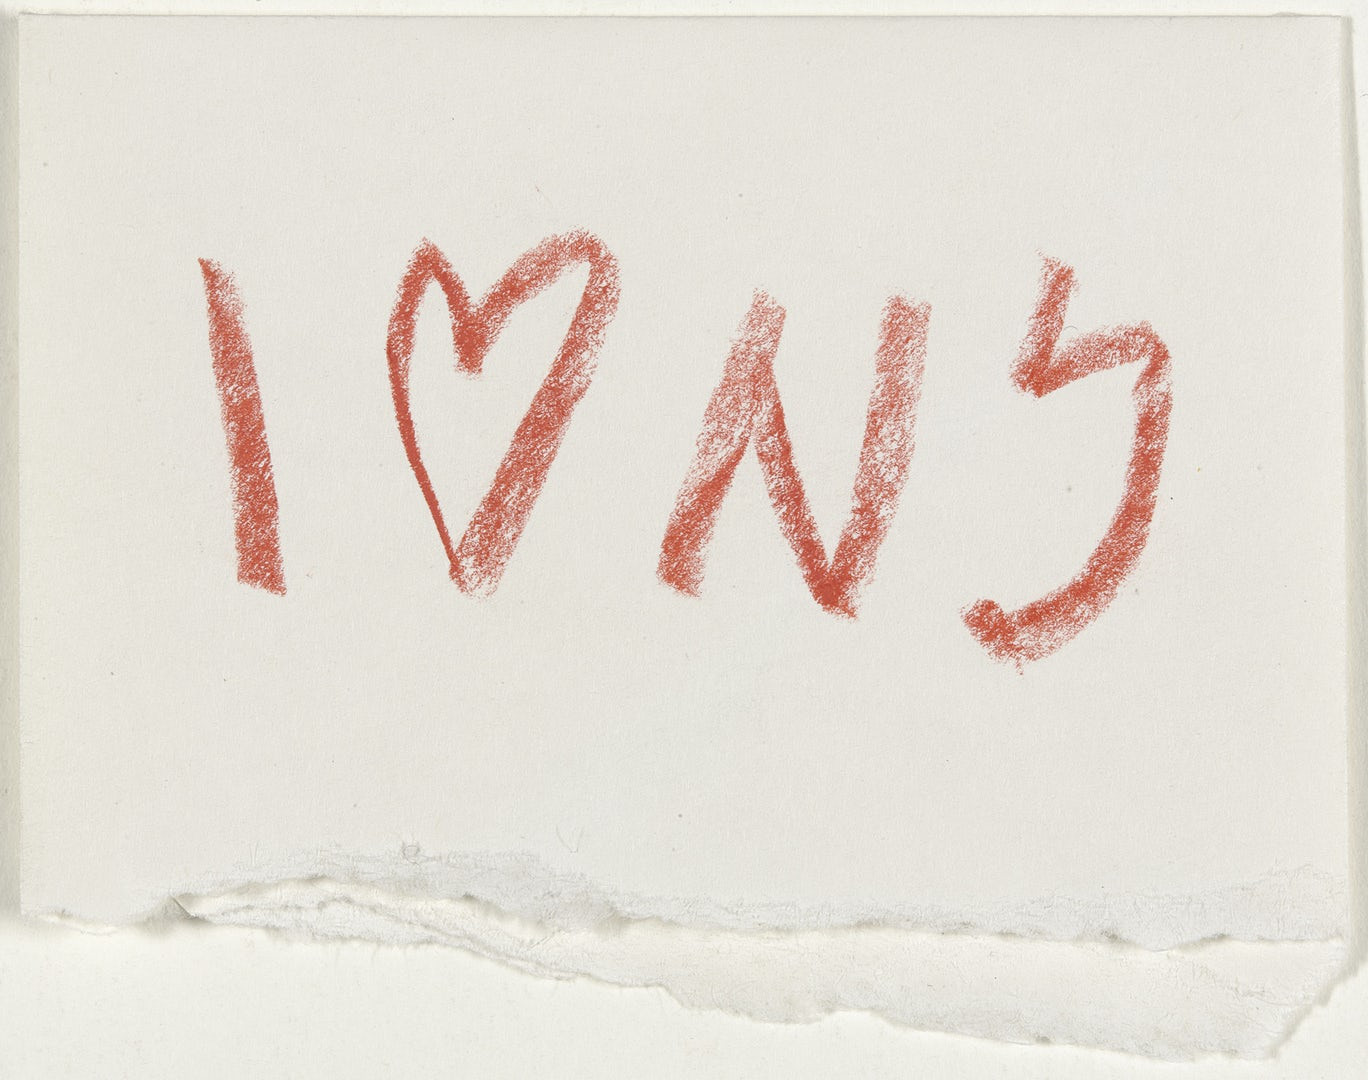 Нью-Йоркийн орчин үеийн урлагийн музей MoMA-д хадгалагдаж байгаа "I love NY"-ийн  1976 оны загвар зураг